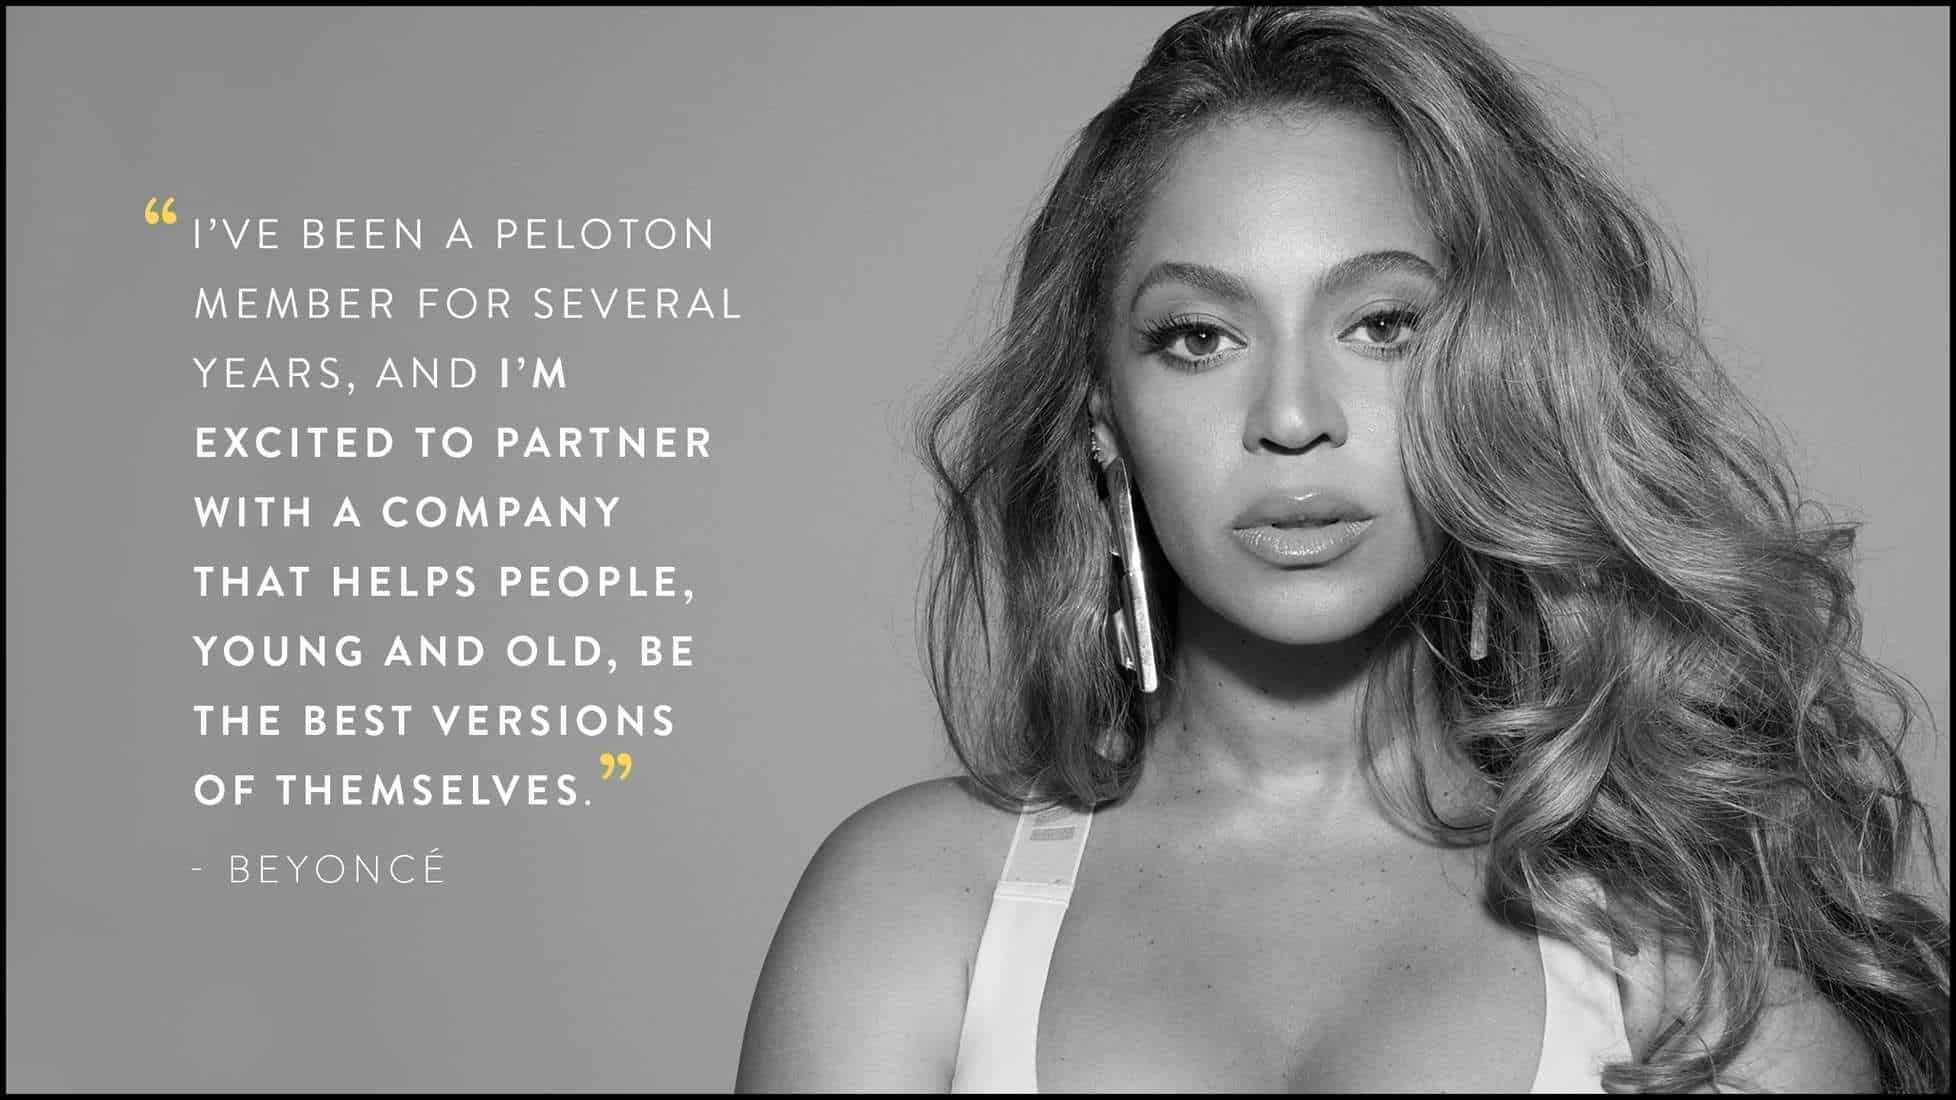 Beyoncé and Peloton partnership - Artist Series workouts - Announcement